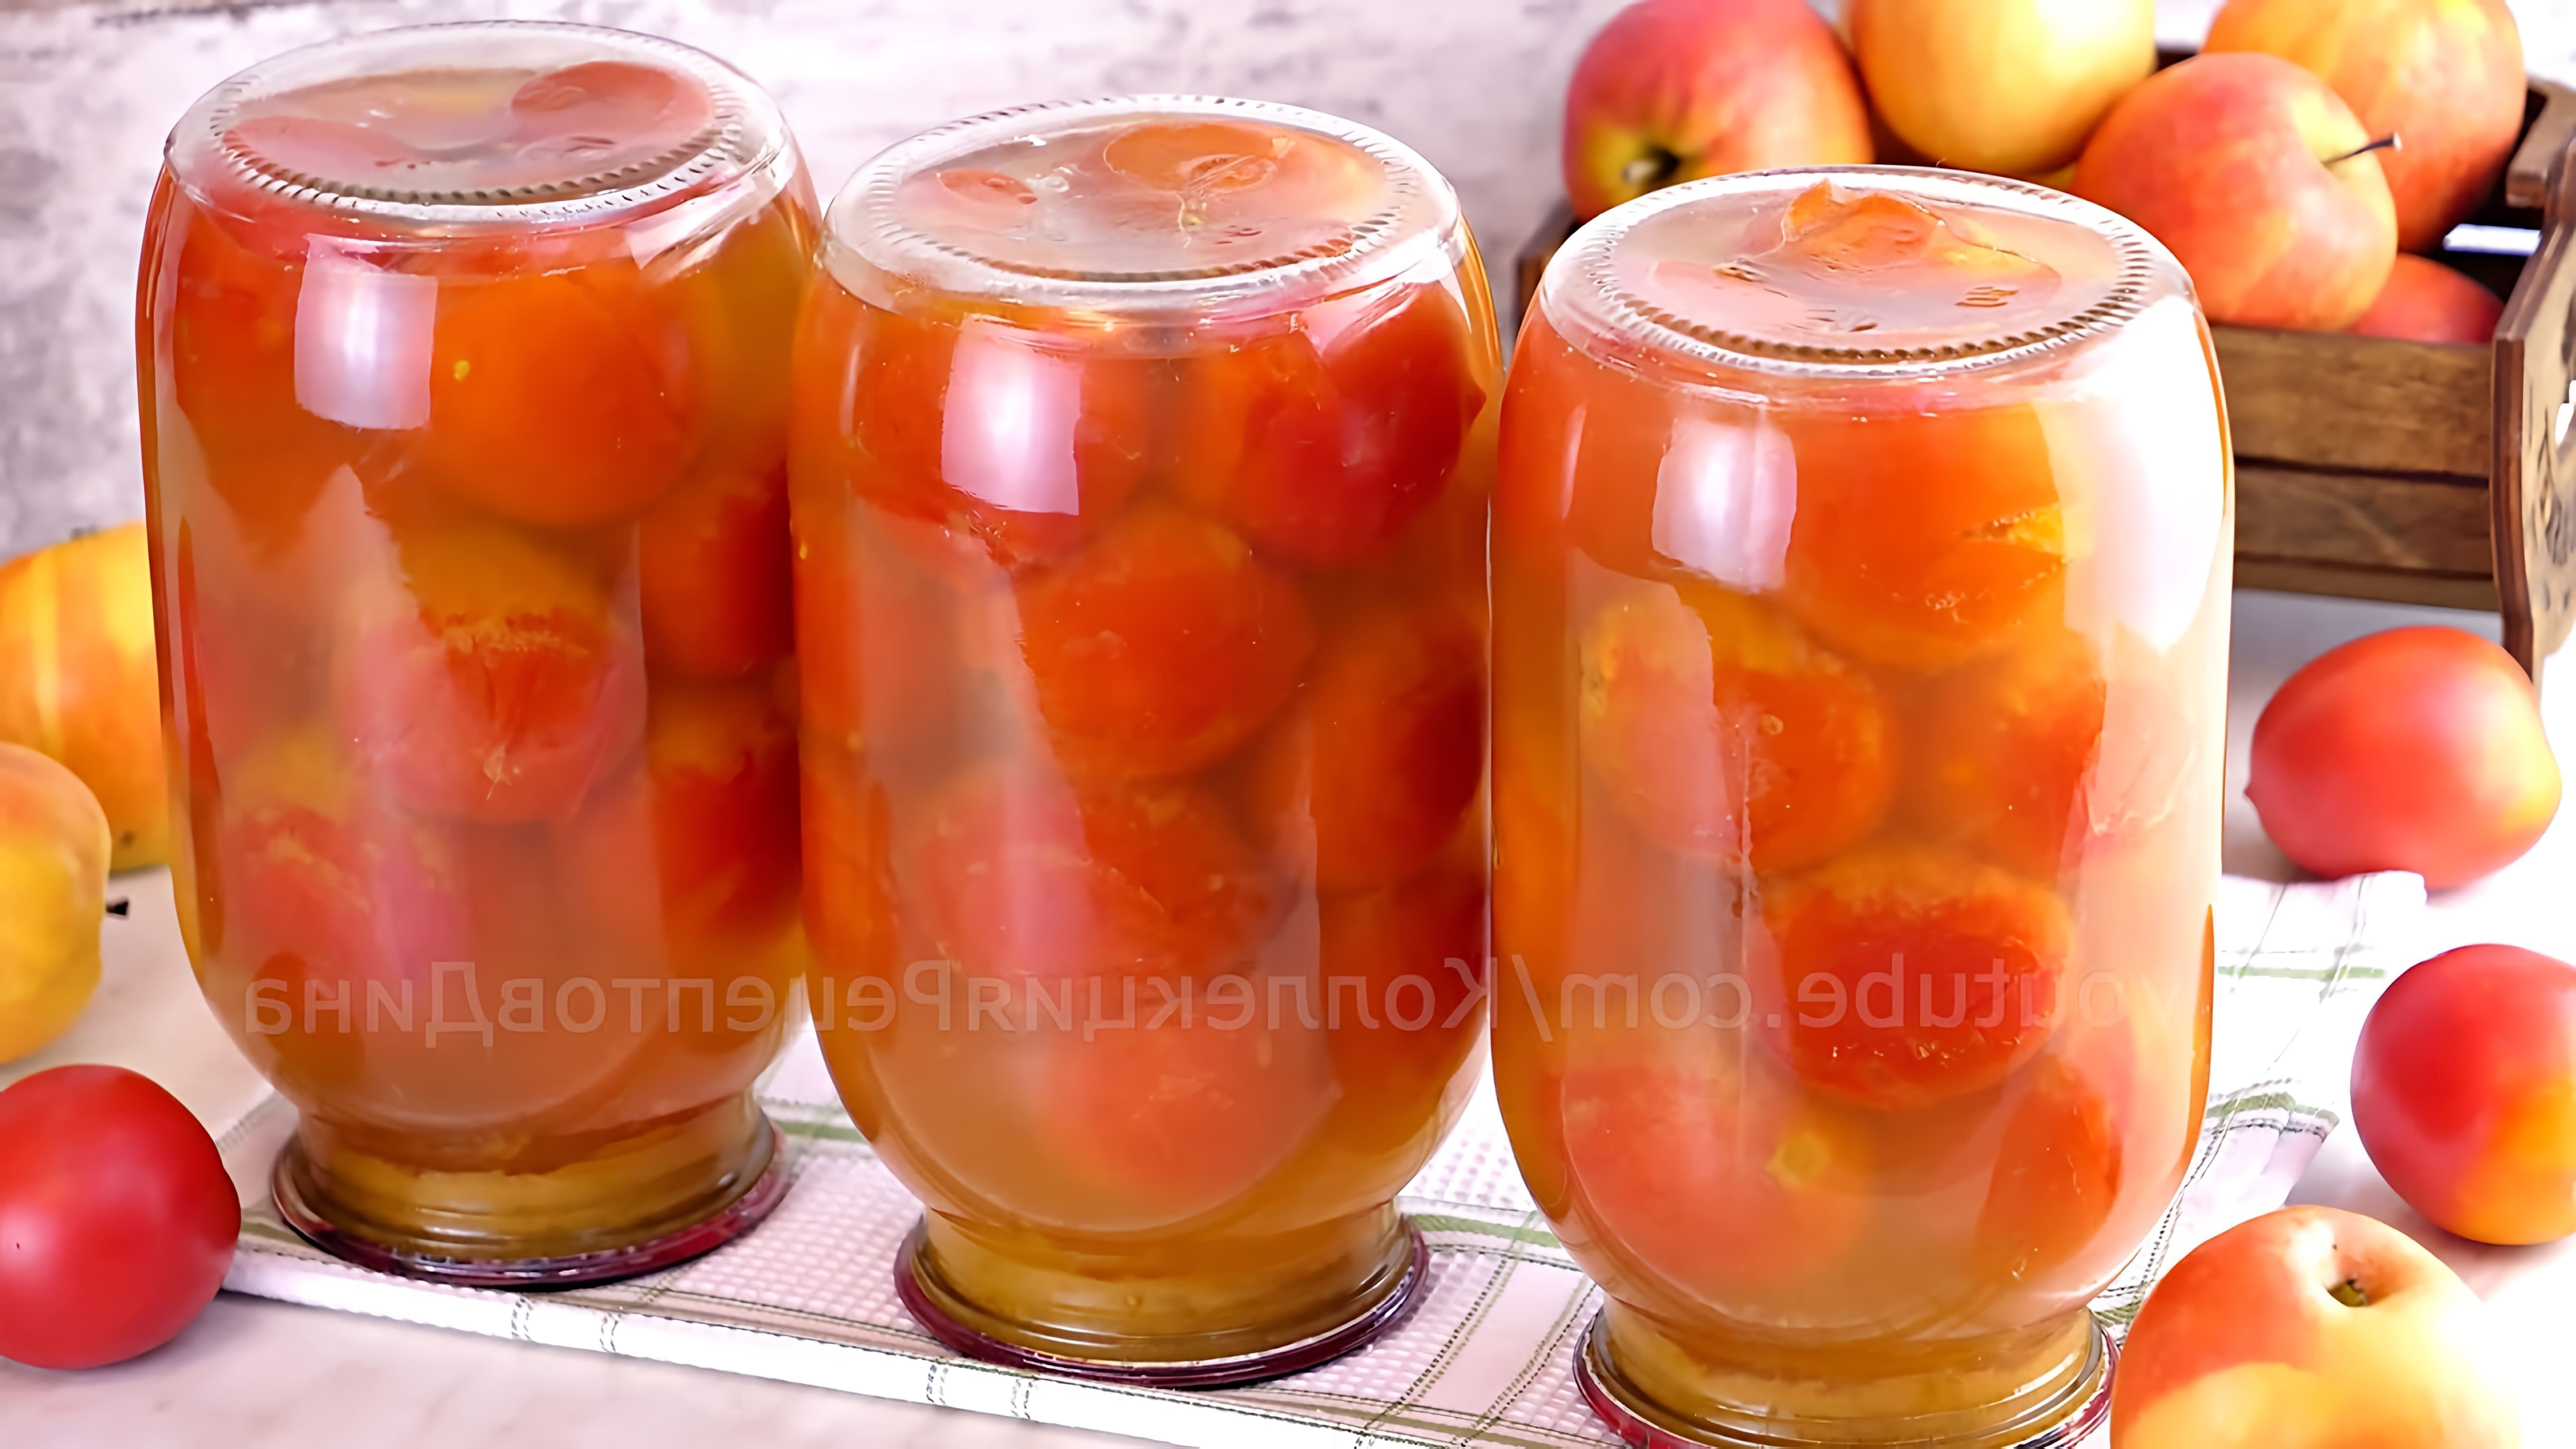 В этом видео демонстрируется процесс приготовления маринованных помидоров в яблочном соке